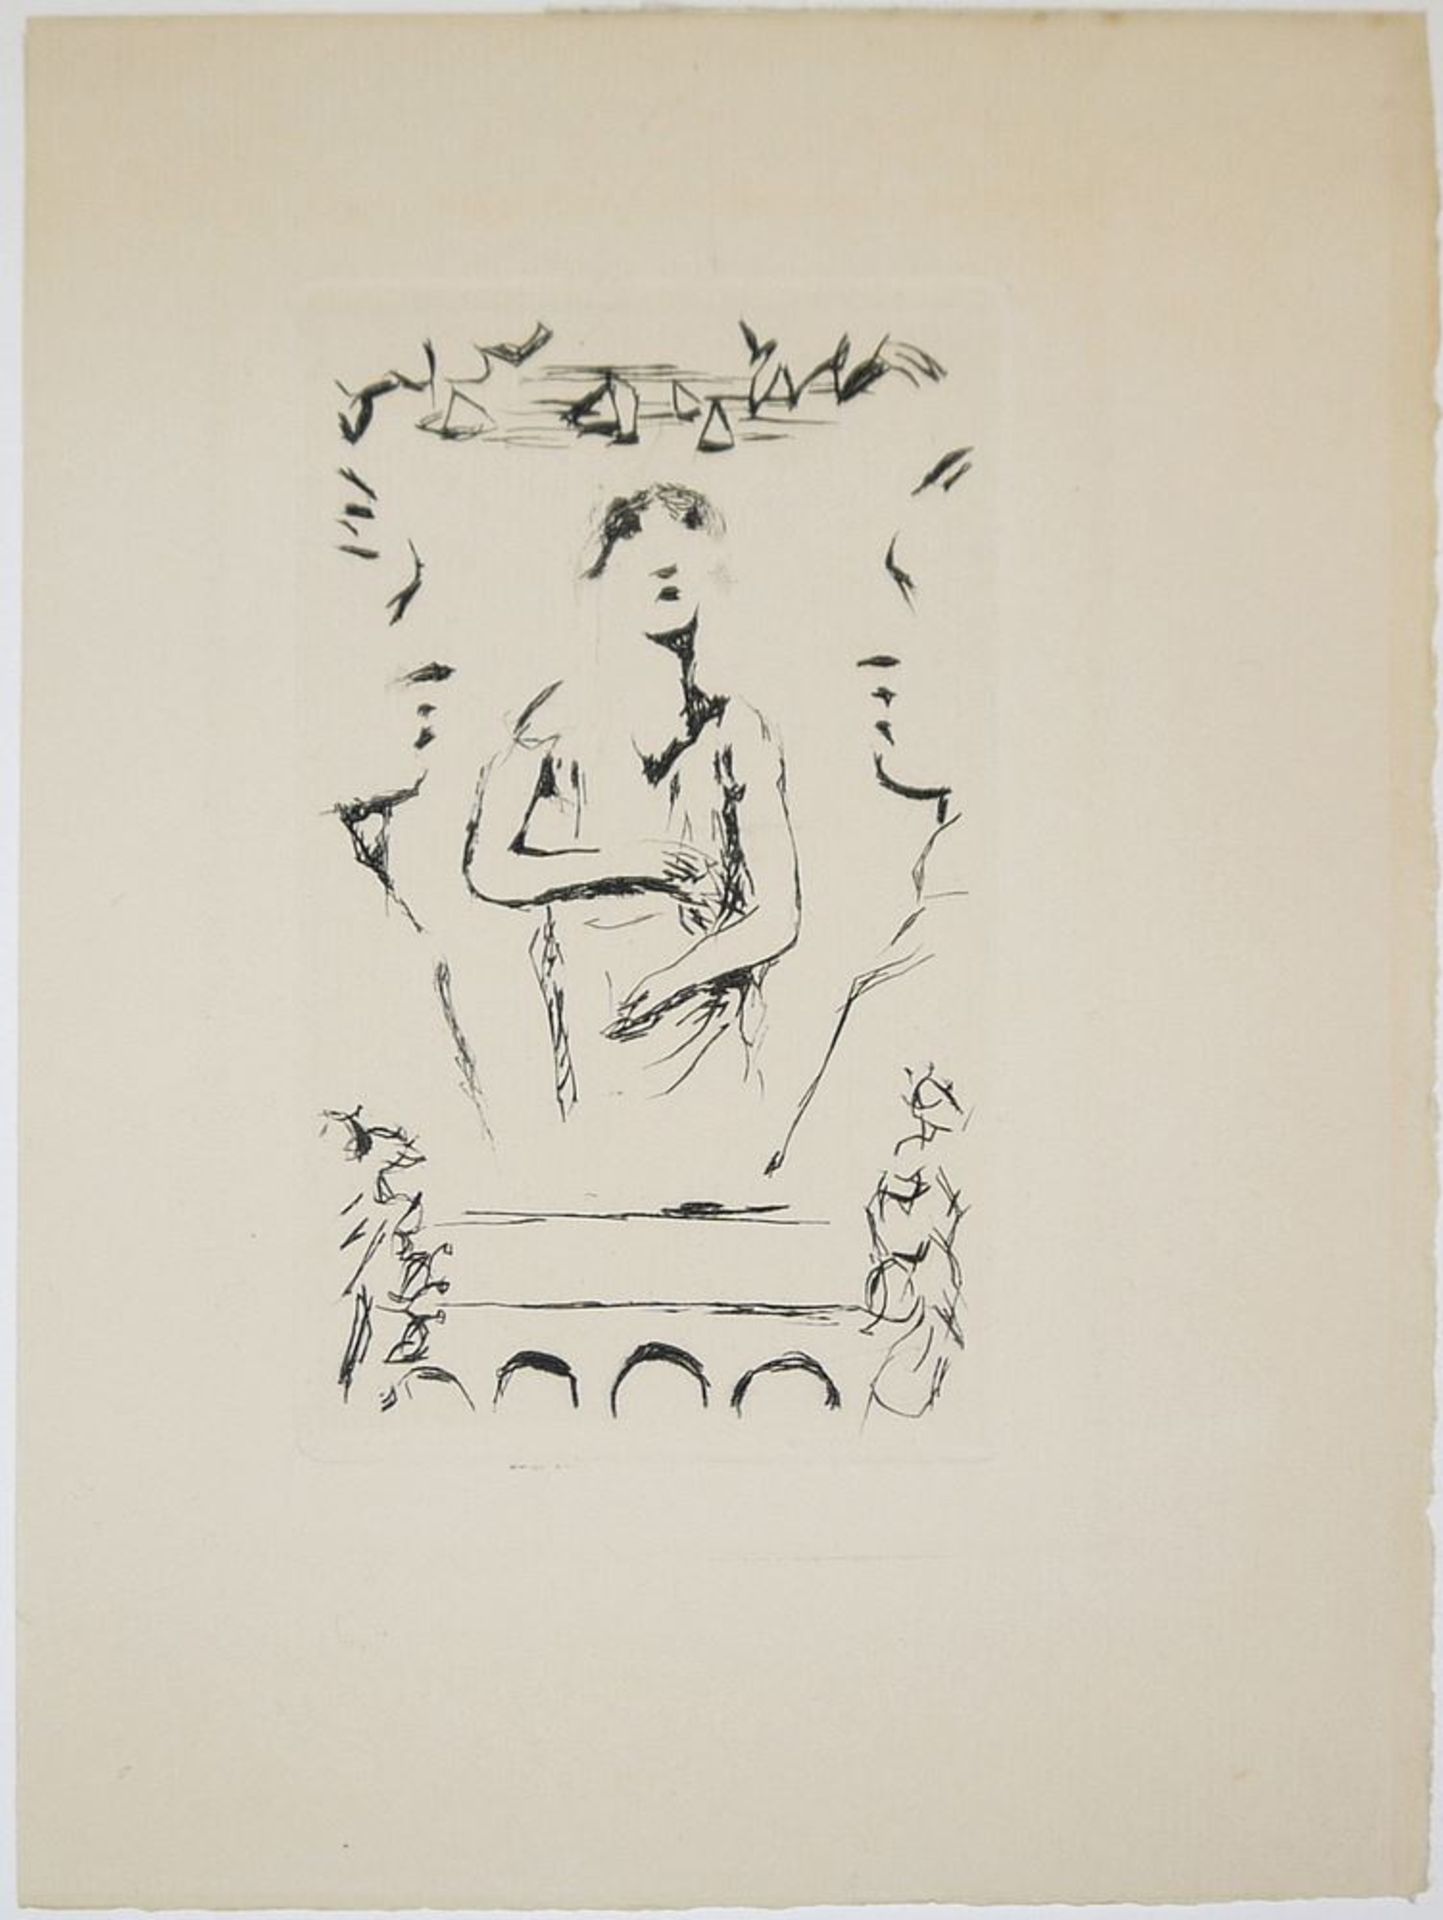 Pierre Bonnard, "Kleiner Kopf" - "Junge Frau am Meer" - Komposition, 3 Radierungen um 1930 - Image 4 of 4